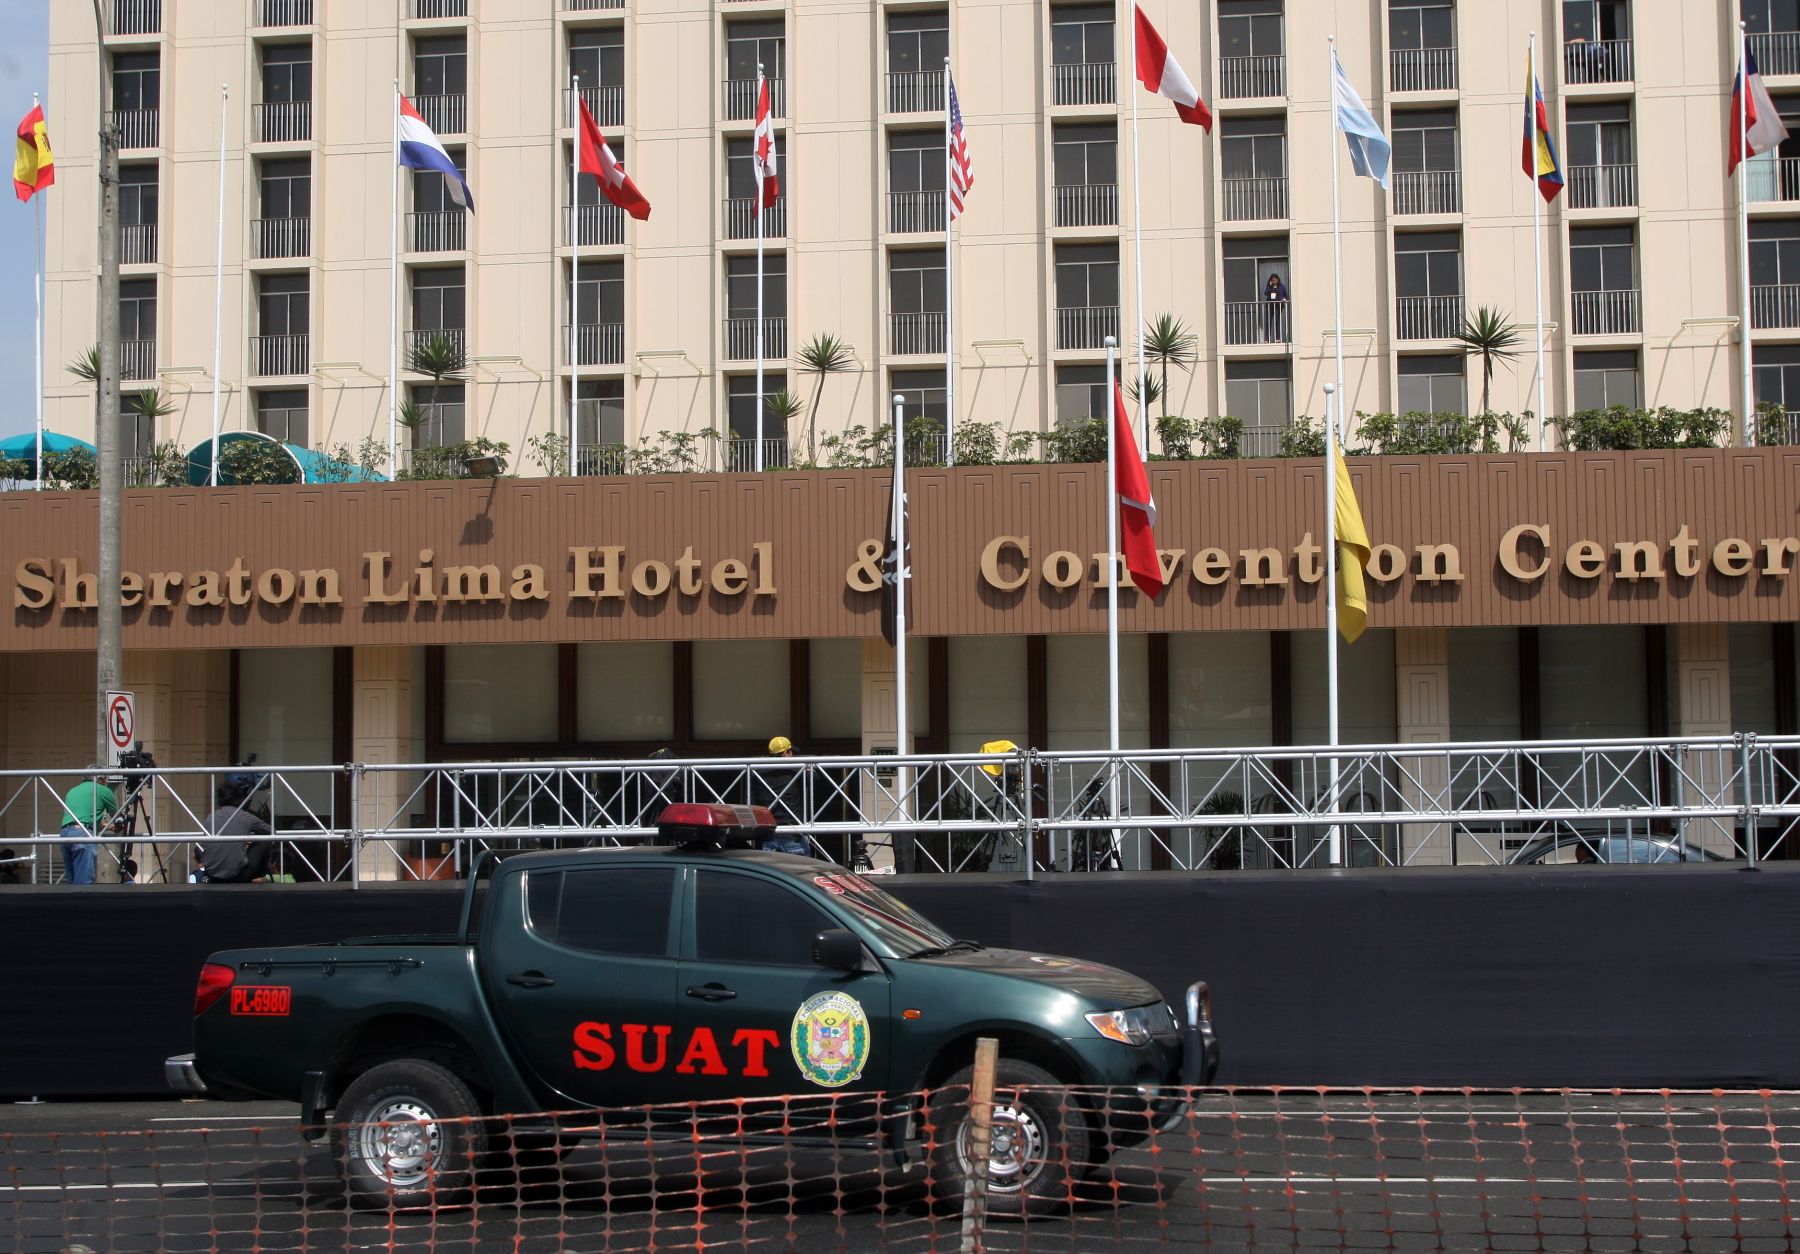 Medidas de seguridad y restricción de tránsito en los alrededores del Hotel Sheraton.
Foto:ANDINA/Héctor Vinces.